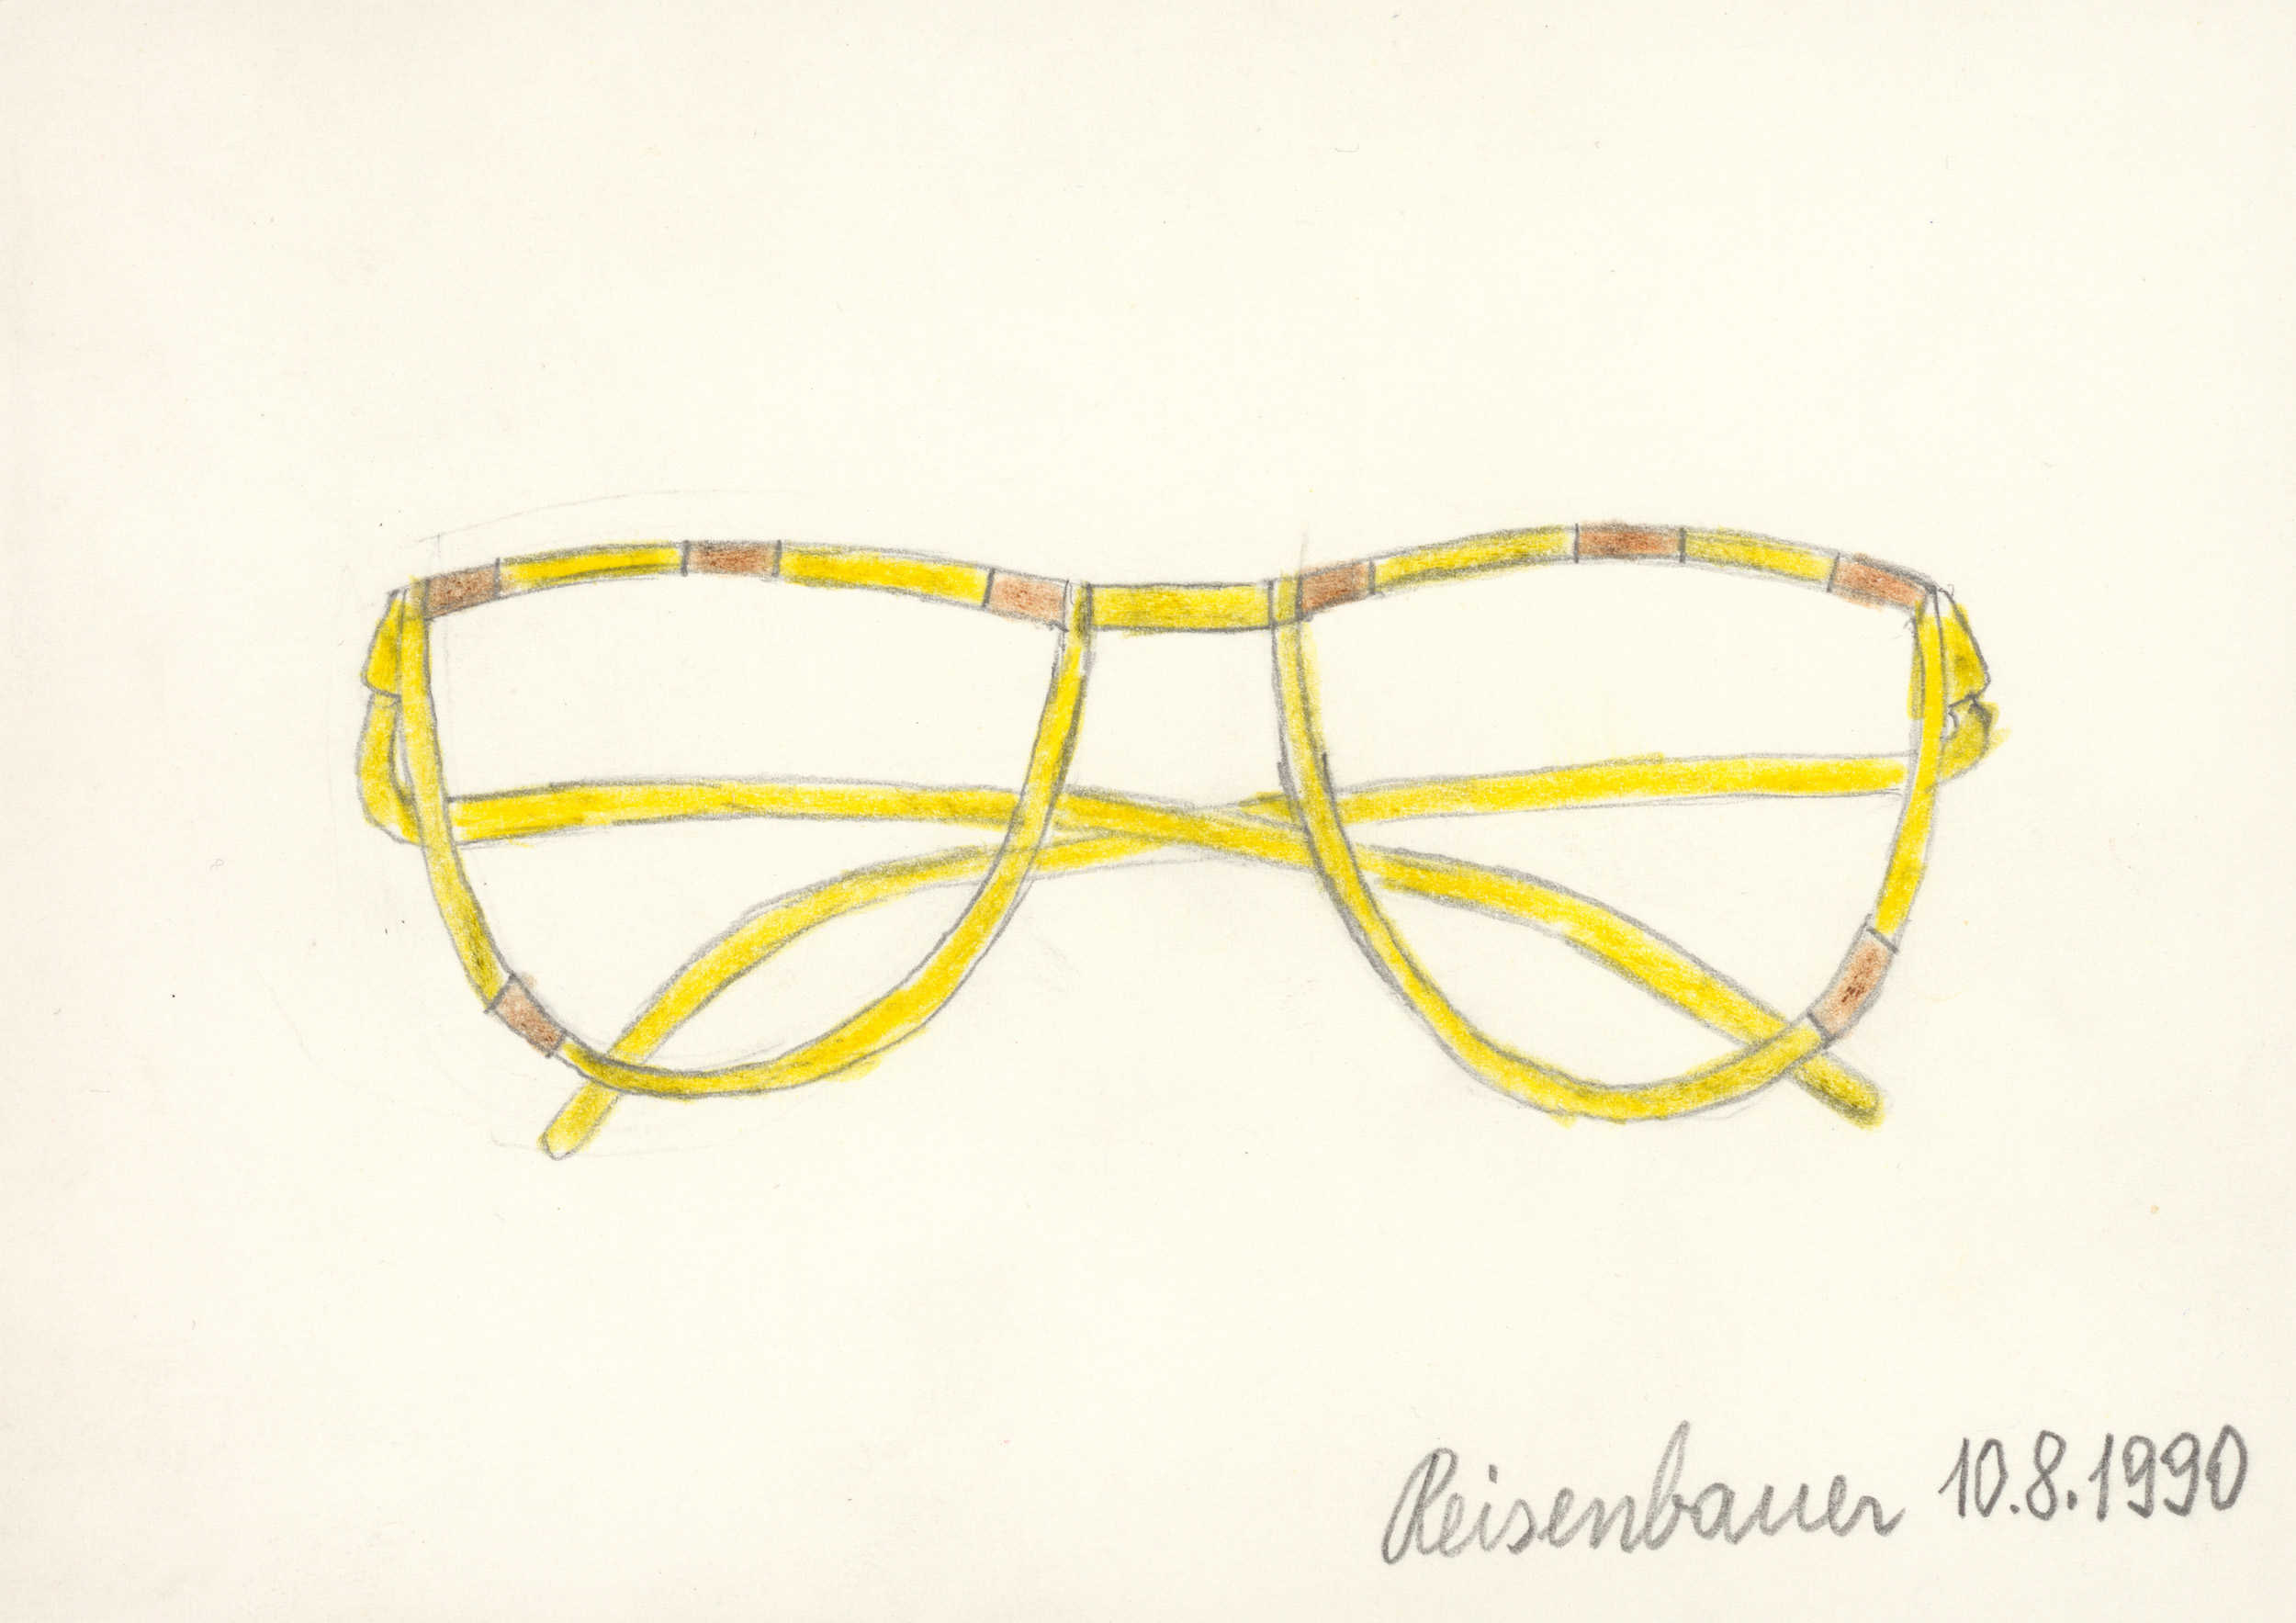 reisenbauer heinrich - Brille / Glasses